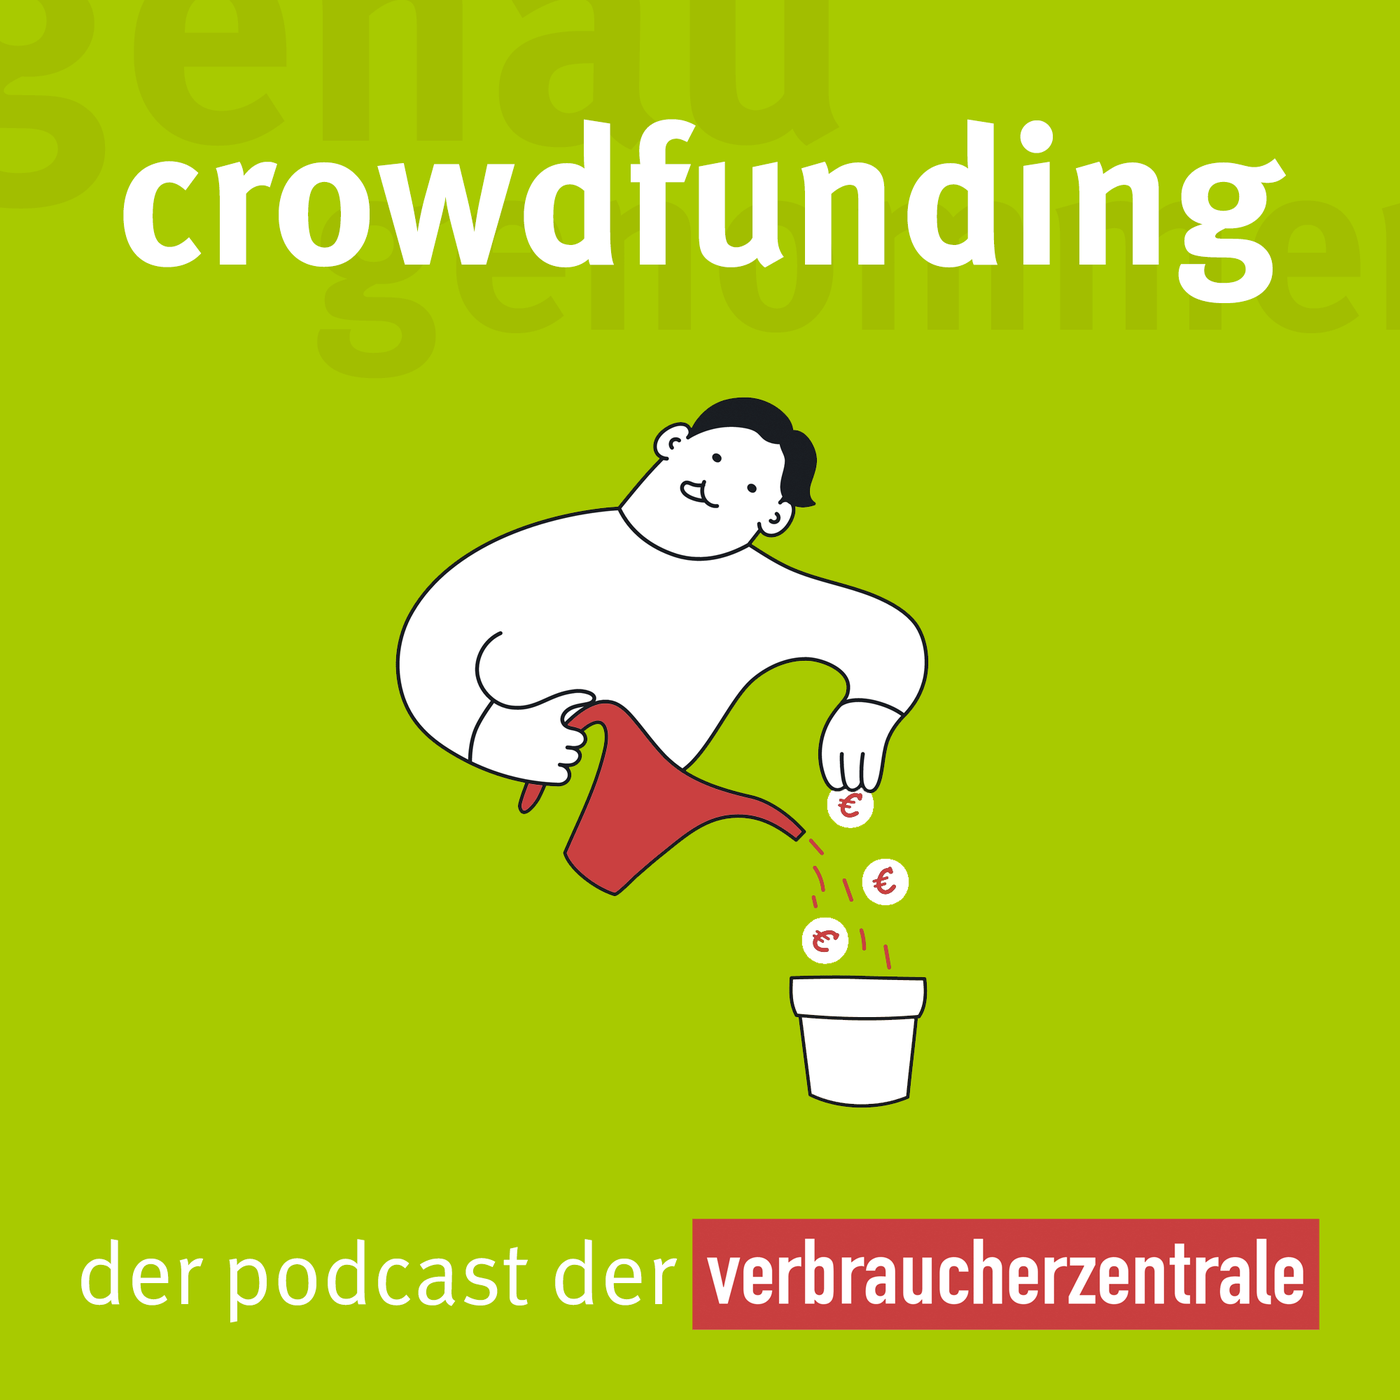 Crowdfunding - aber stressfrei bitte!